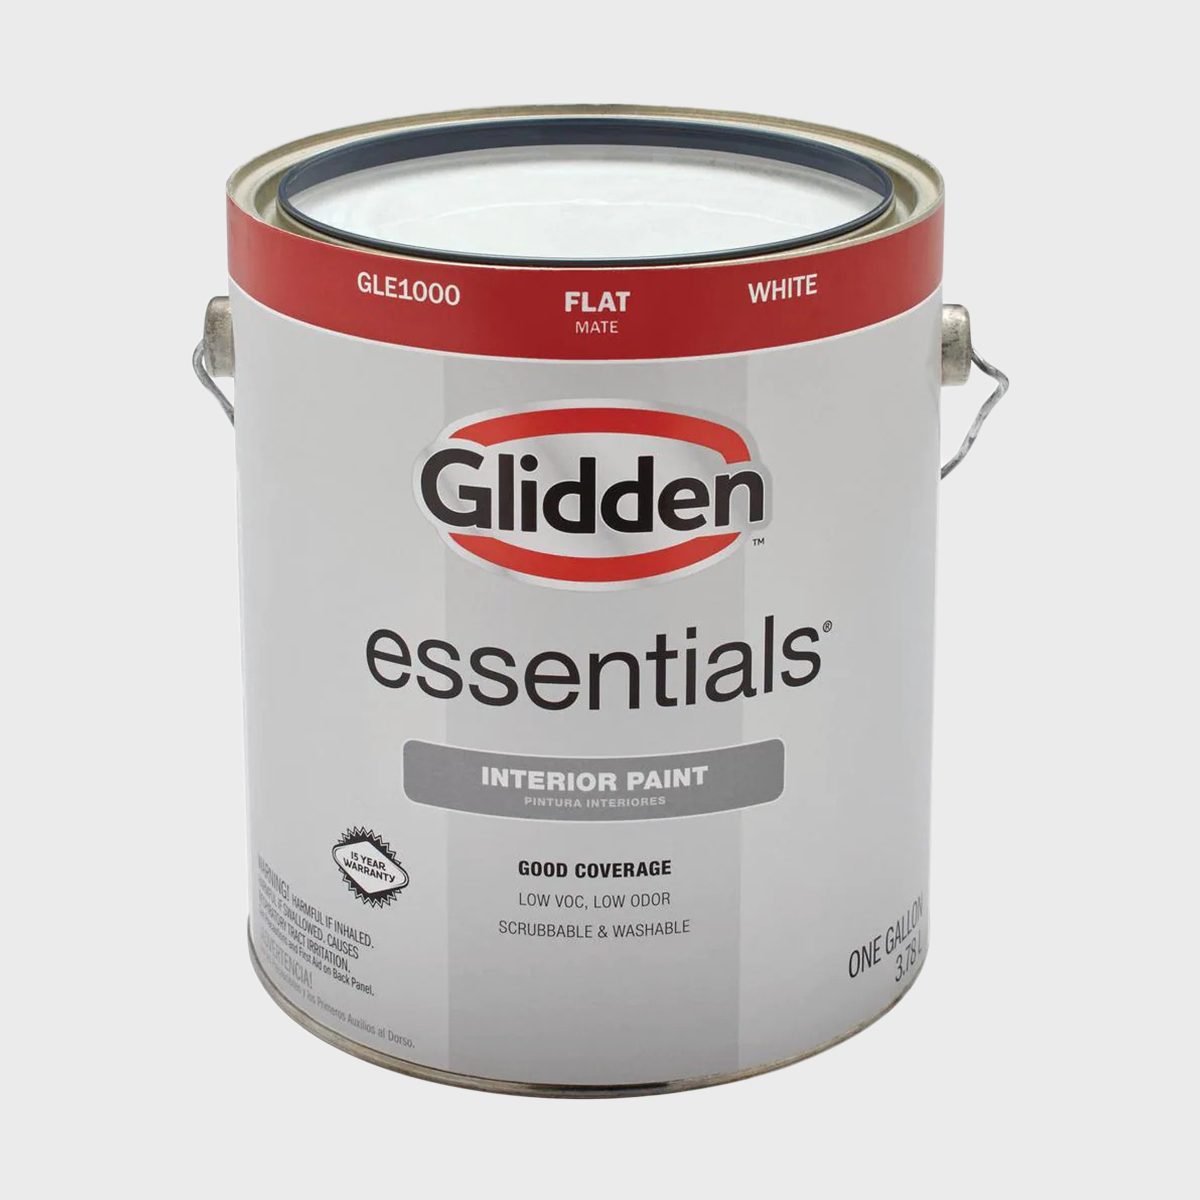 Glidden Essentials Interior Paint